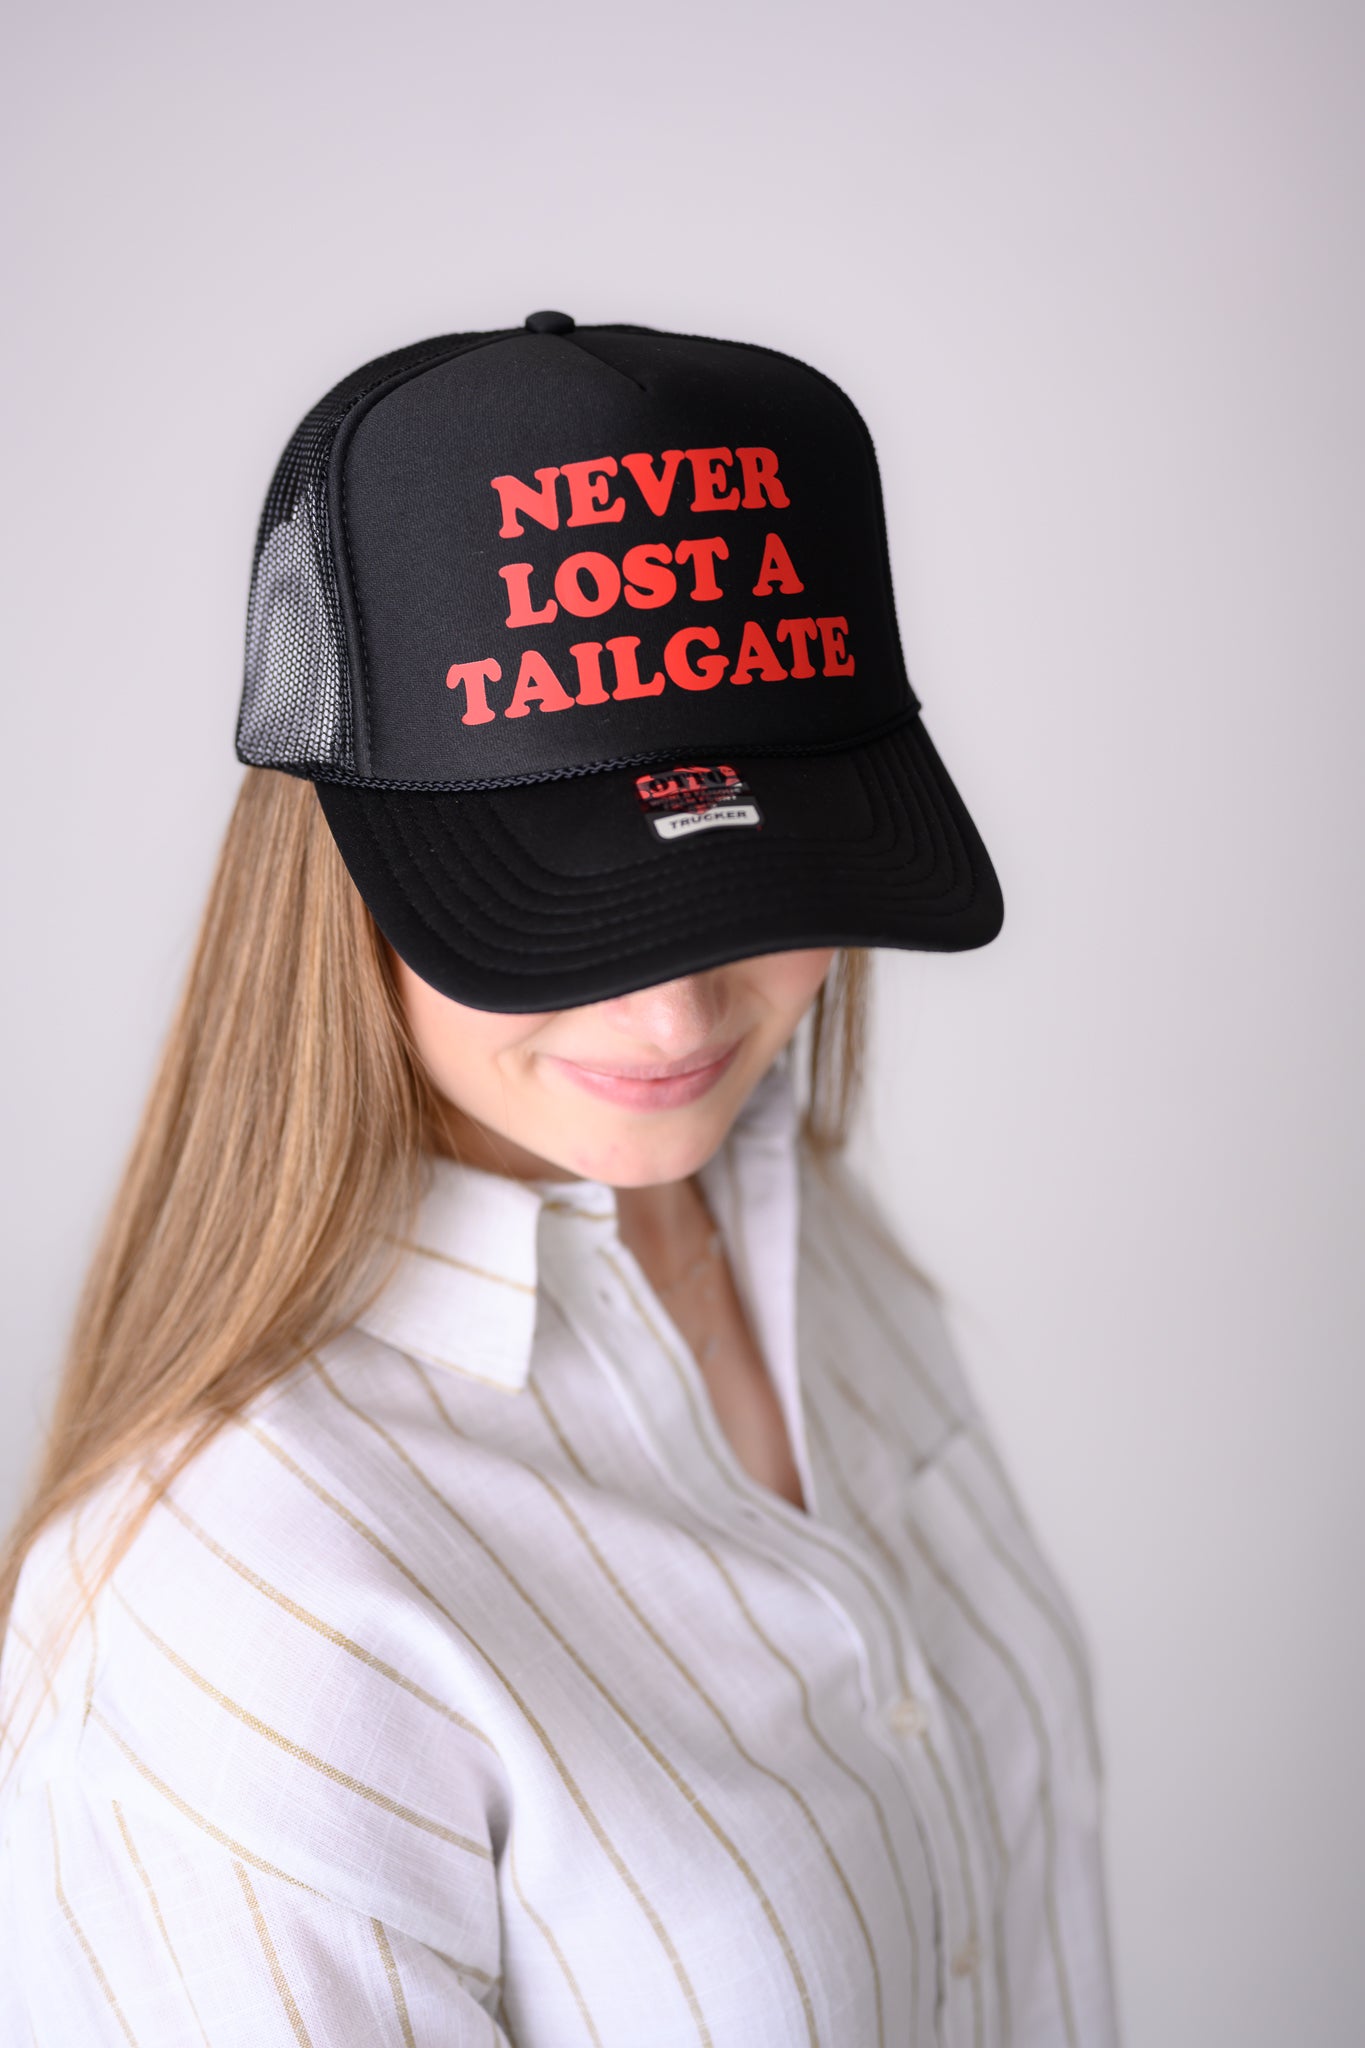 Nebraska Trucker Hats